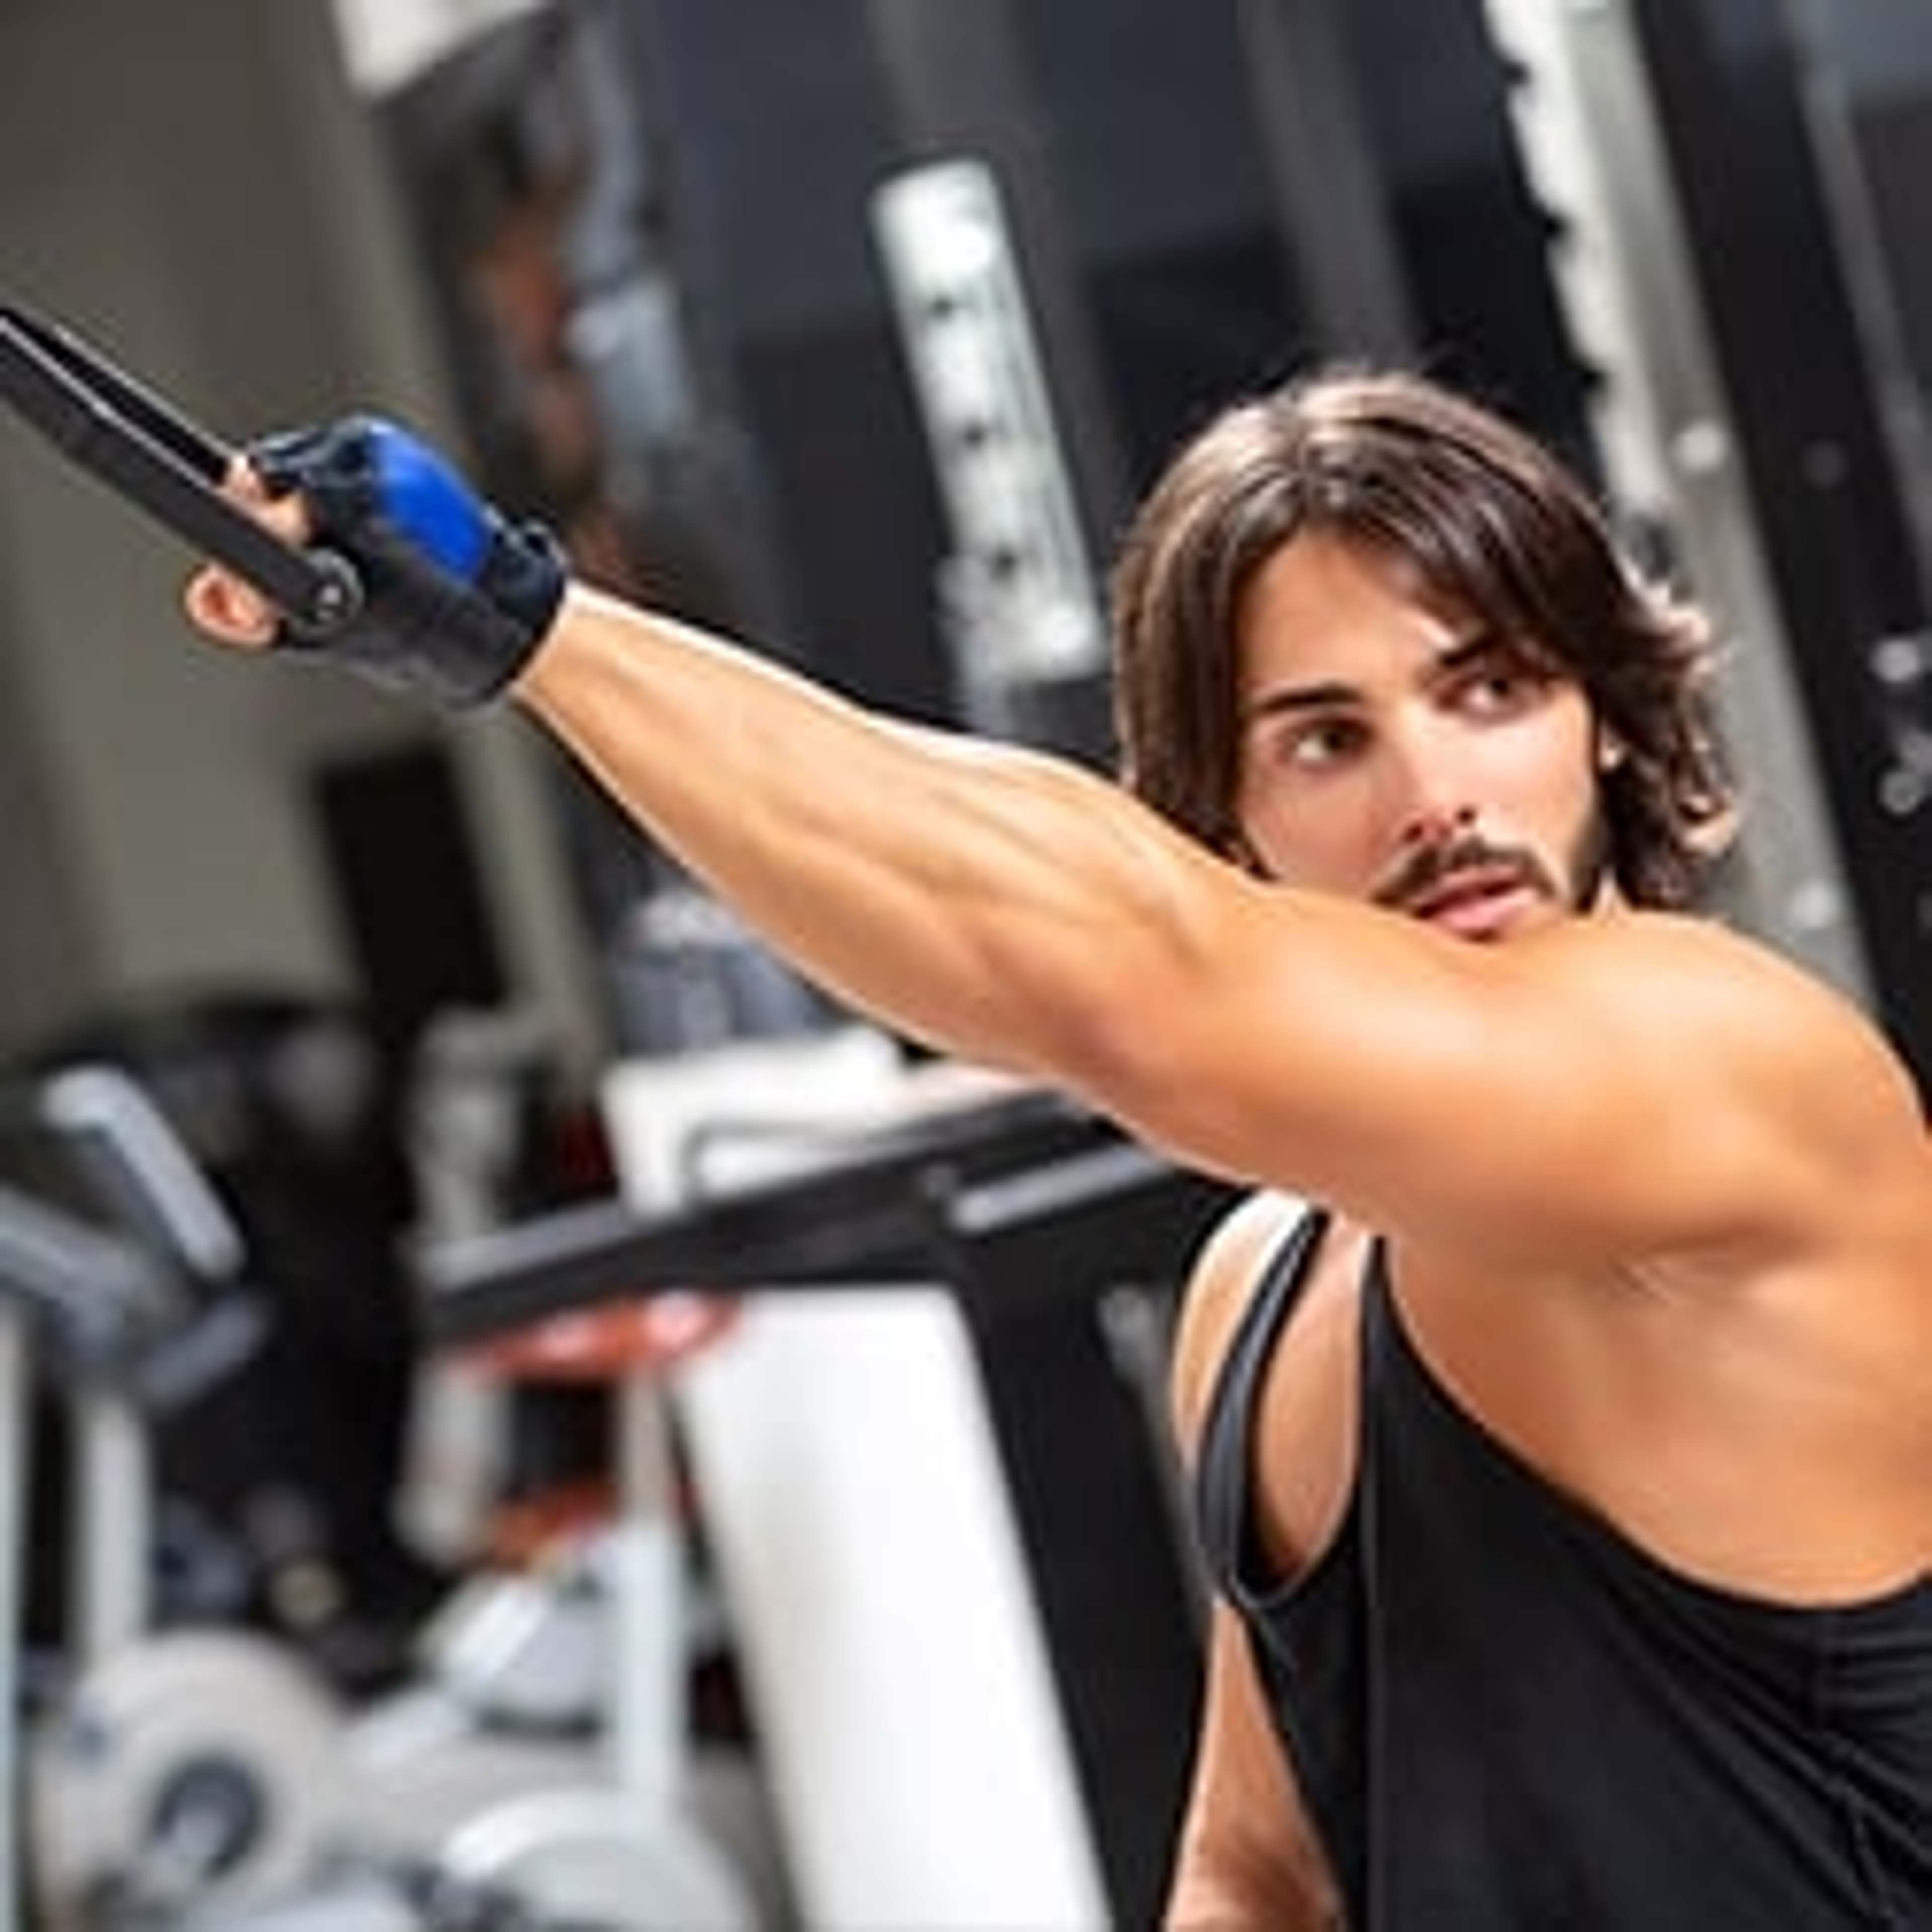 La beta alanina aumenta la forza e le prestazioni muscolari, consentendo allenamenti più duri e lunghi.